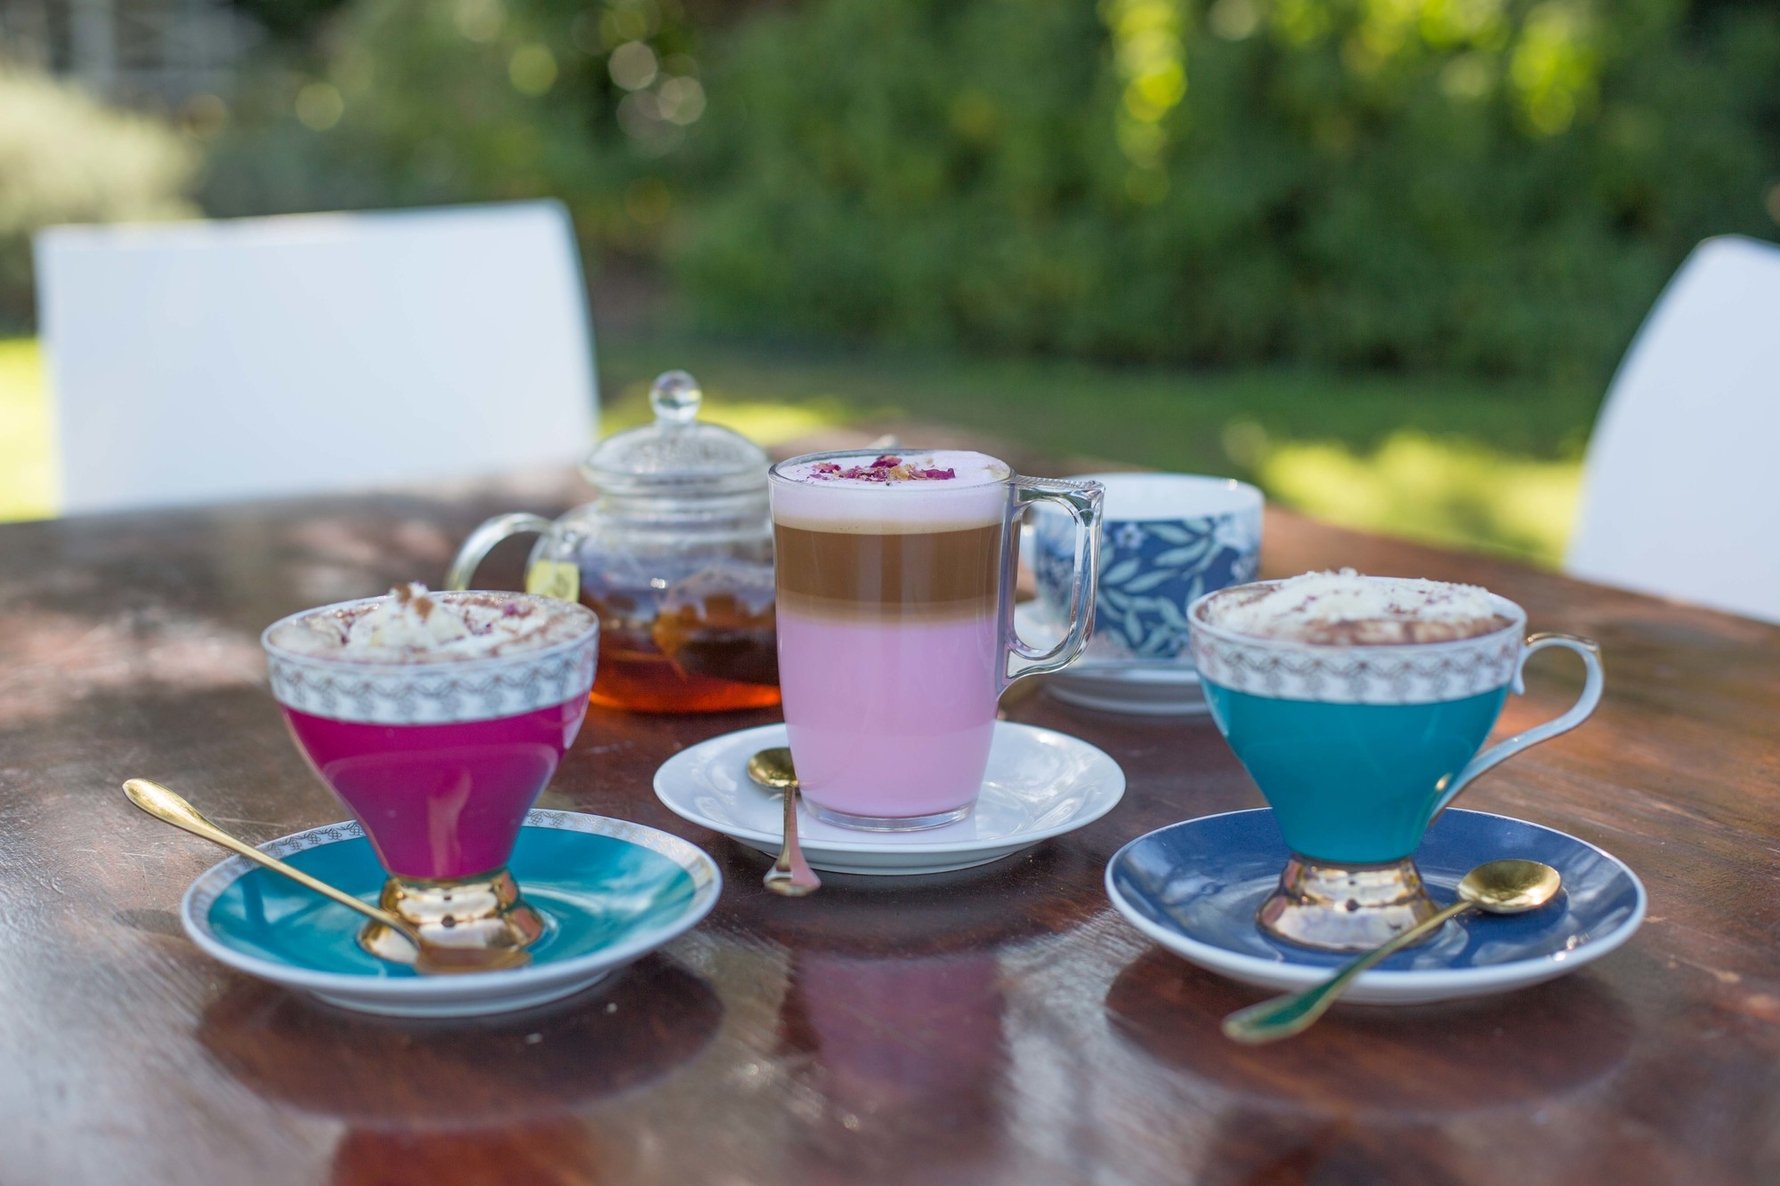 Rose latte and Belgian hot chocolate at Herb Café. Photo: Kate Liquorish.